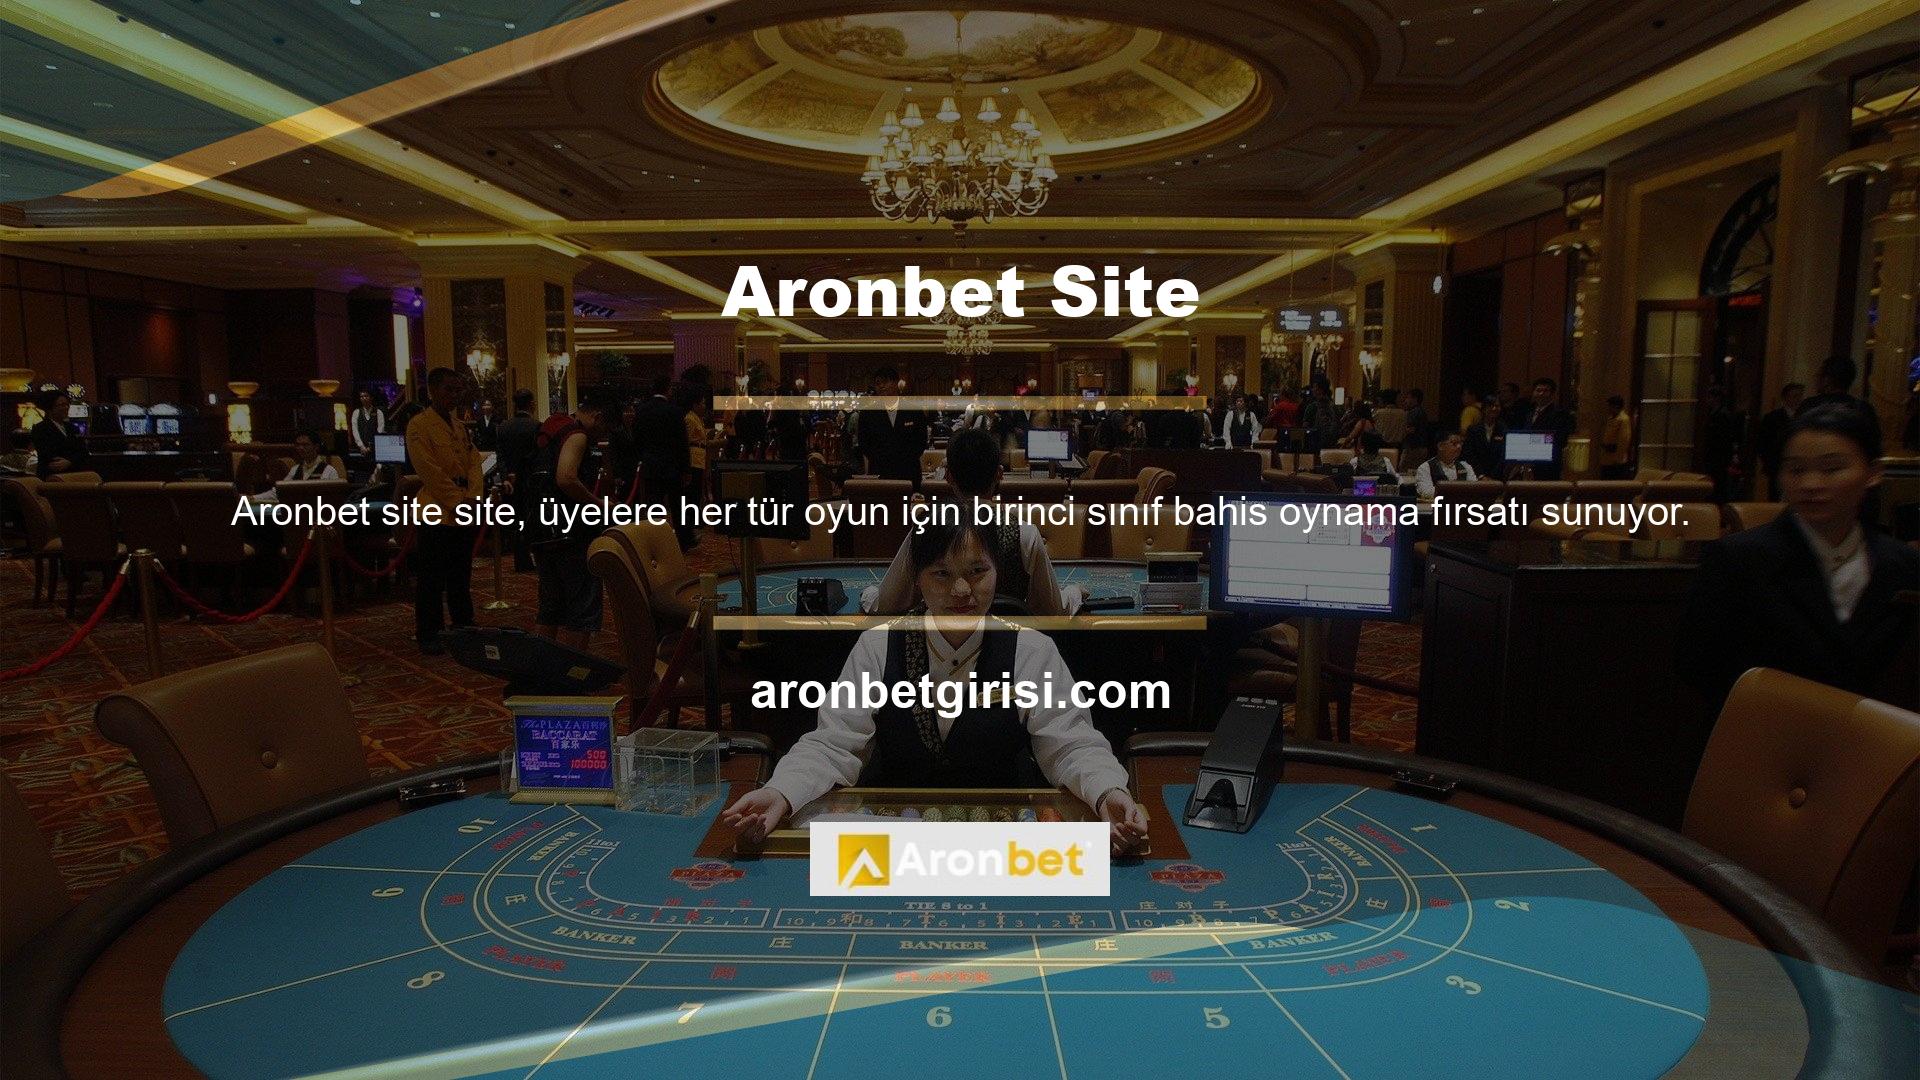 Ayrıca dünya çapında oynanan oyunları kendi internet sitesinde yayınlayan Aronbet, canlı yayına aracılık ediyor